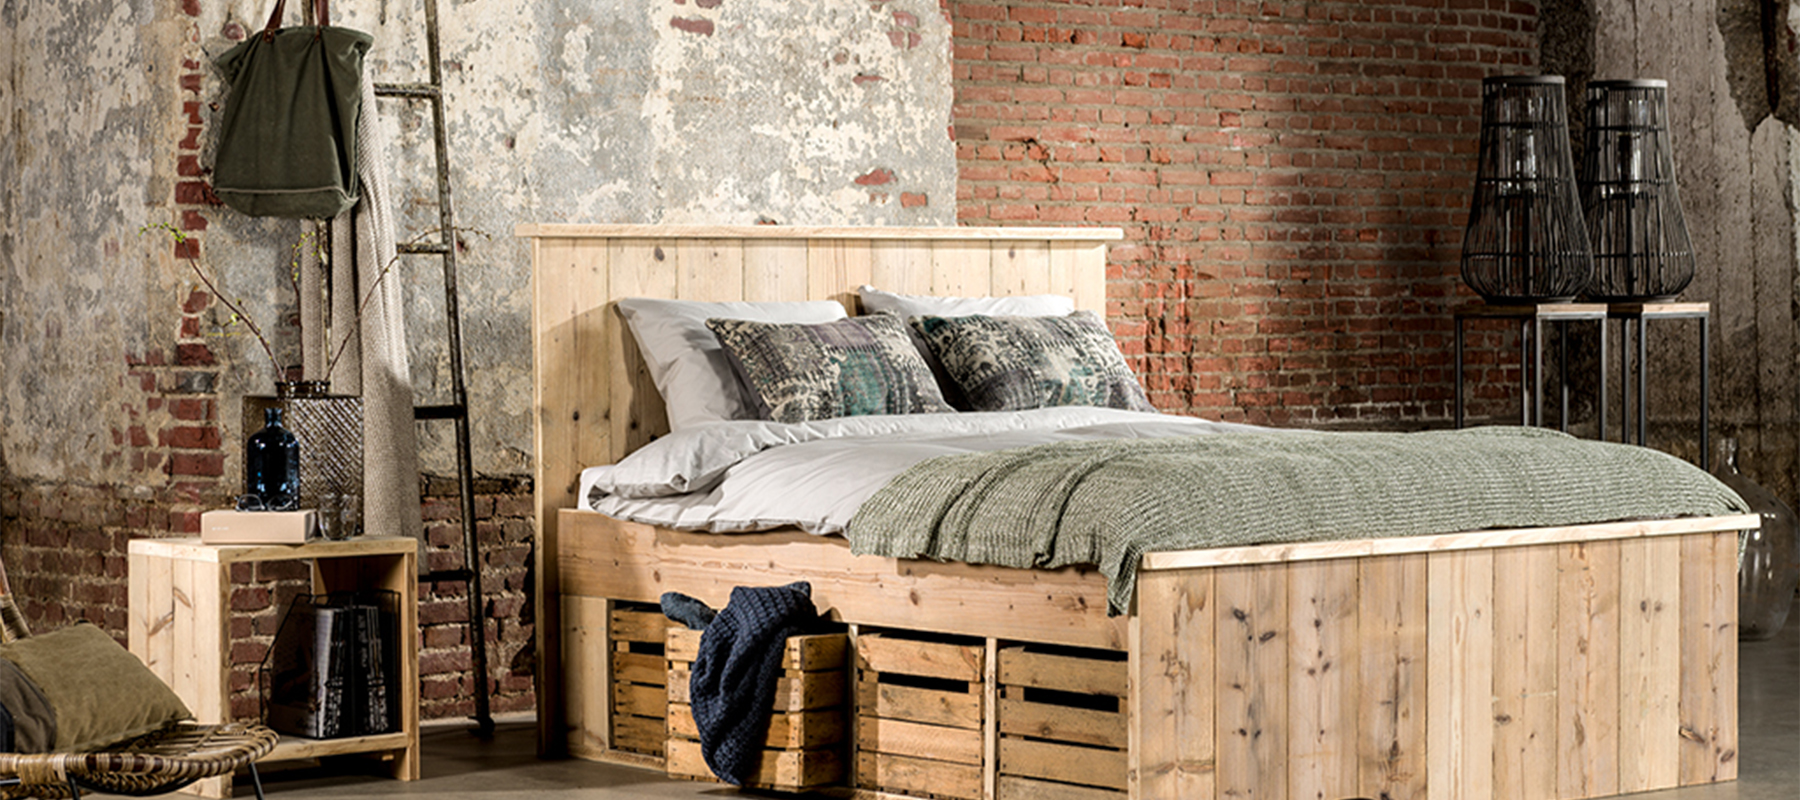 Industriele woonstijl bij livengo houten bed